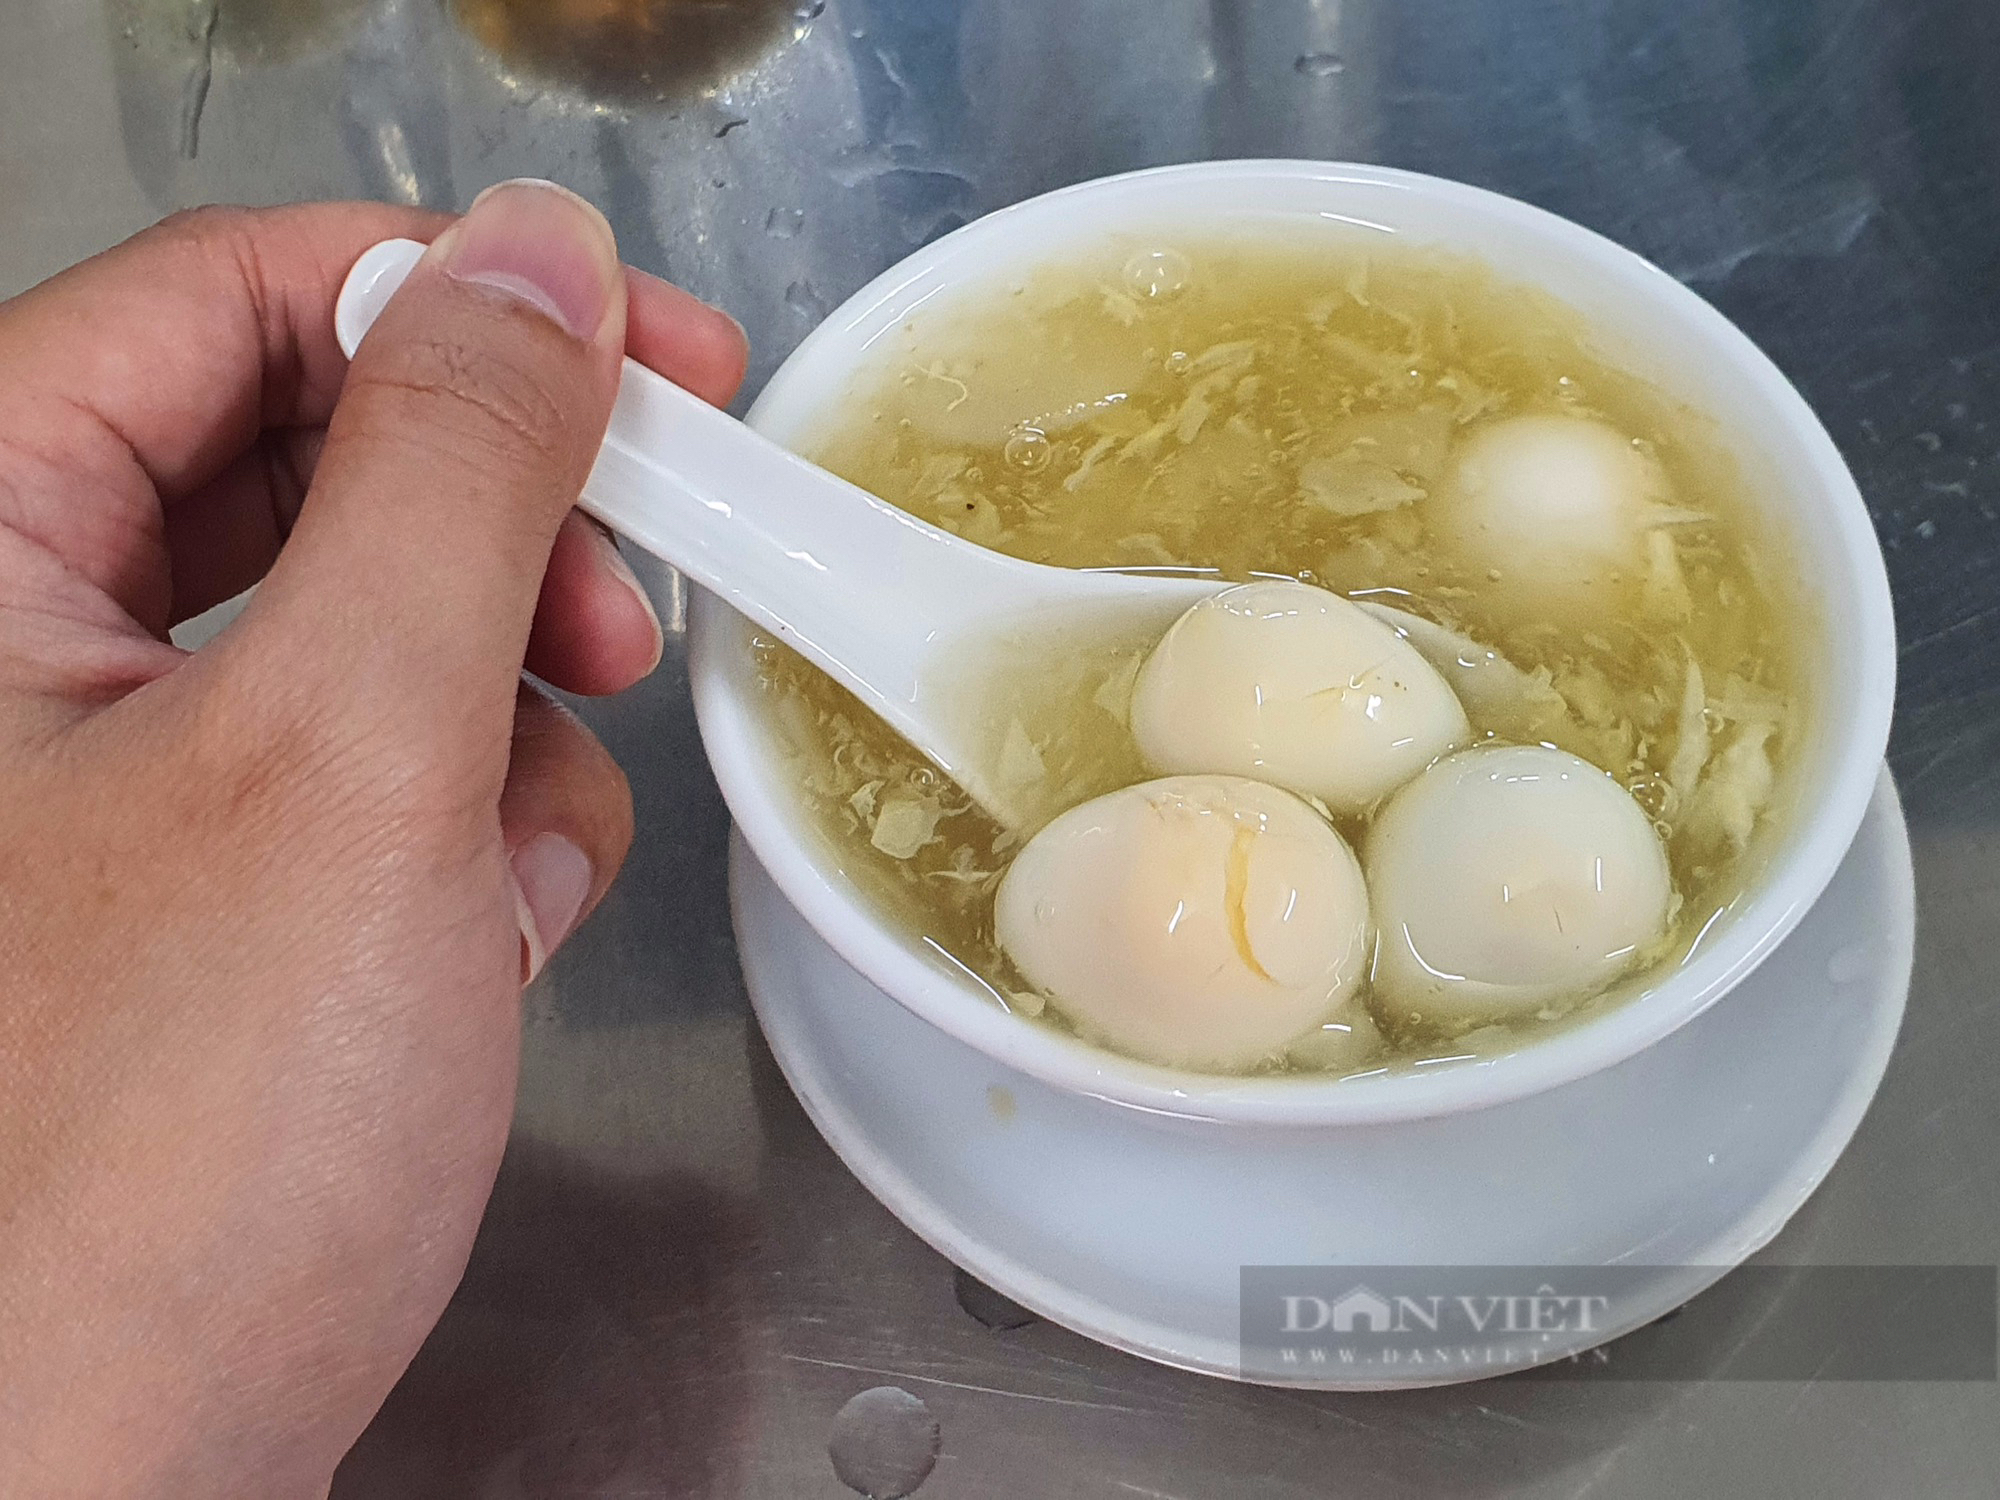 Sài Gòn quán: Sâm bổ lượng chính gốc người Hoa 60 năm ở quận 3, "hết hồn" với menu hơn hai chục món-4